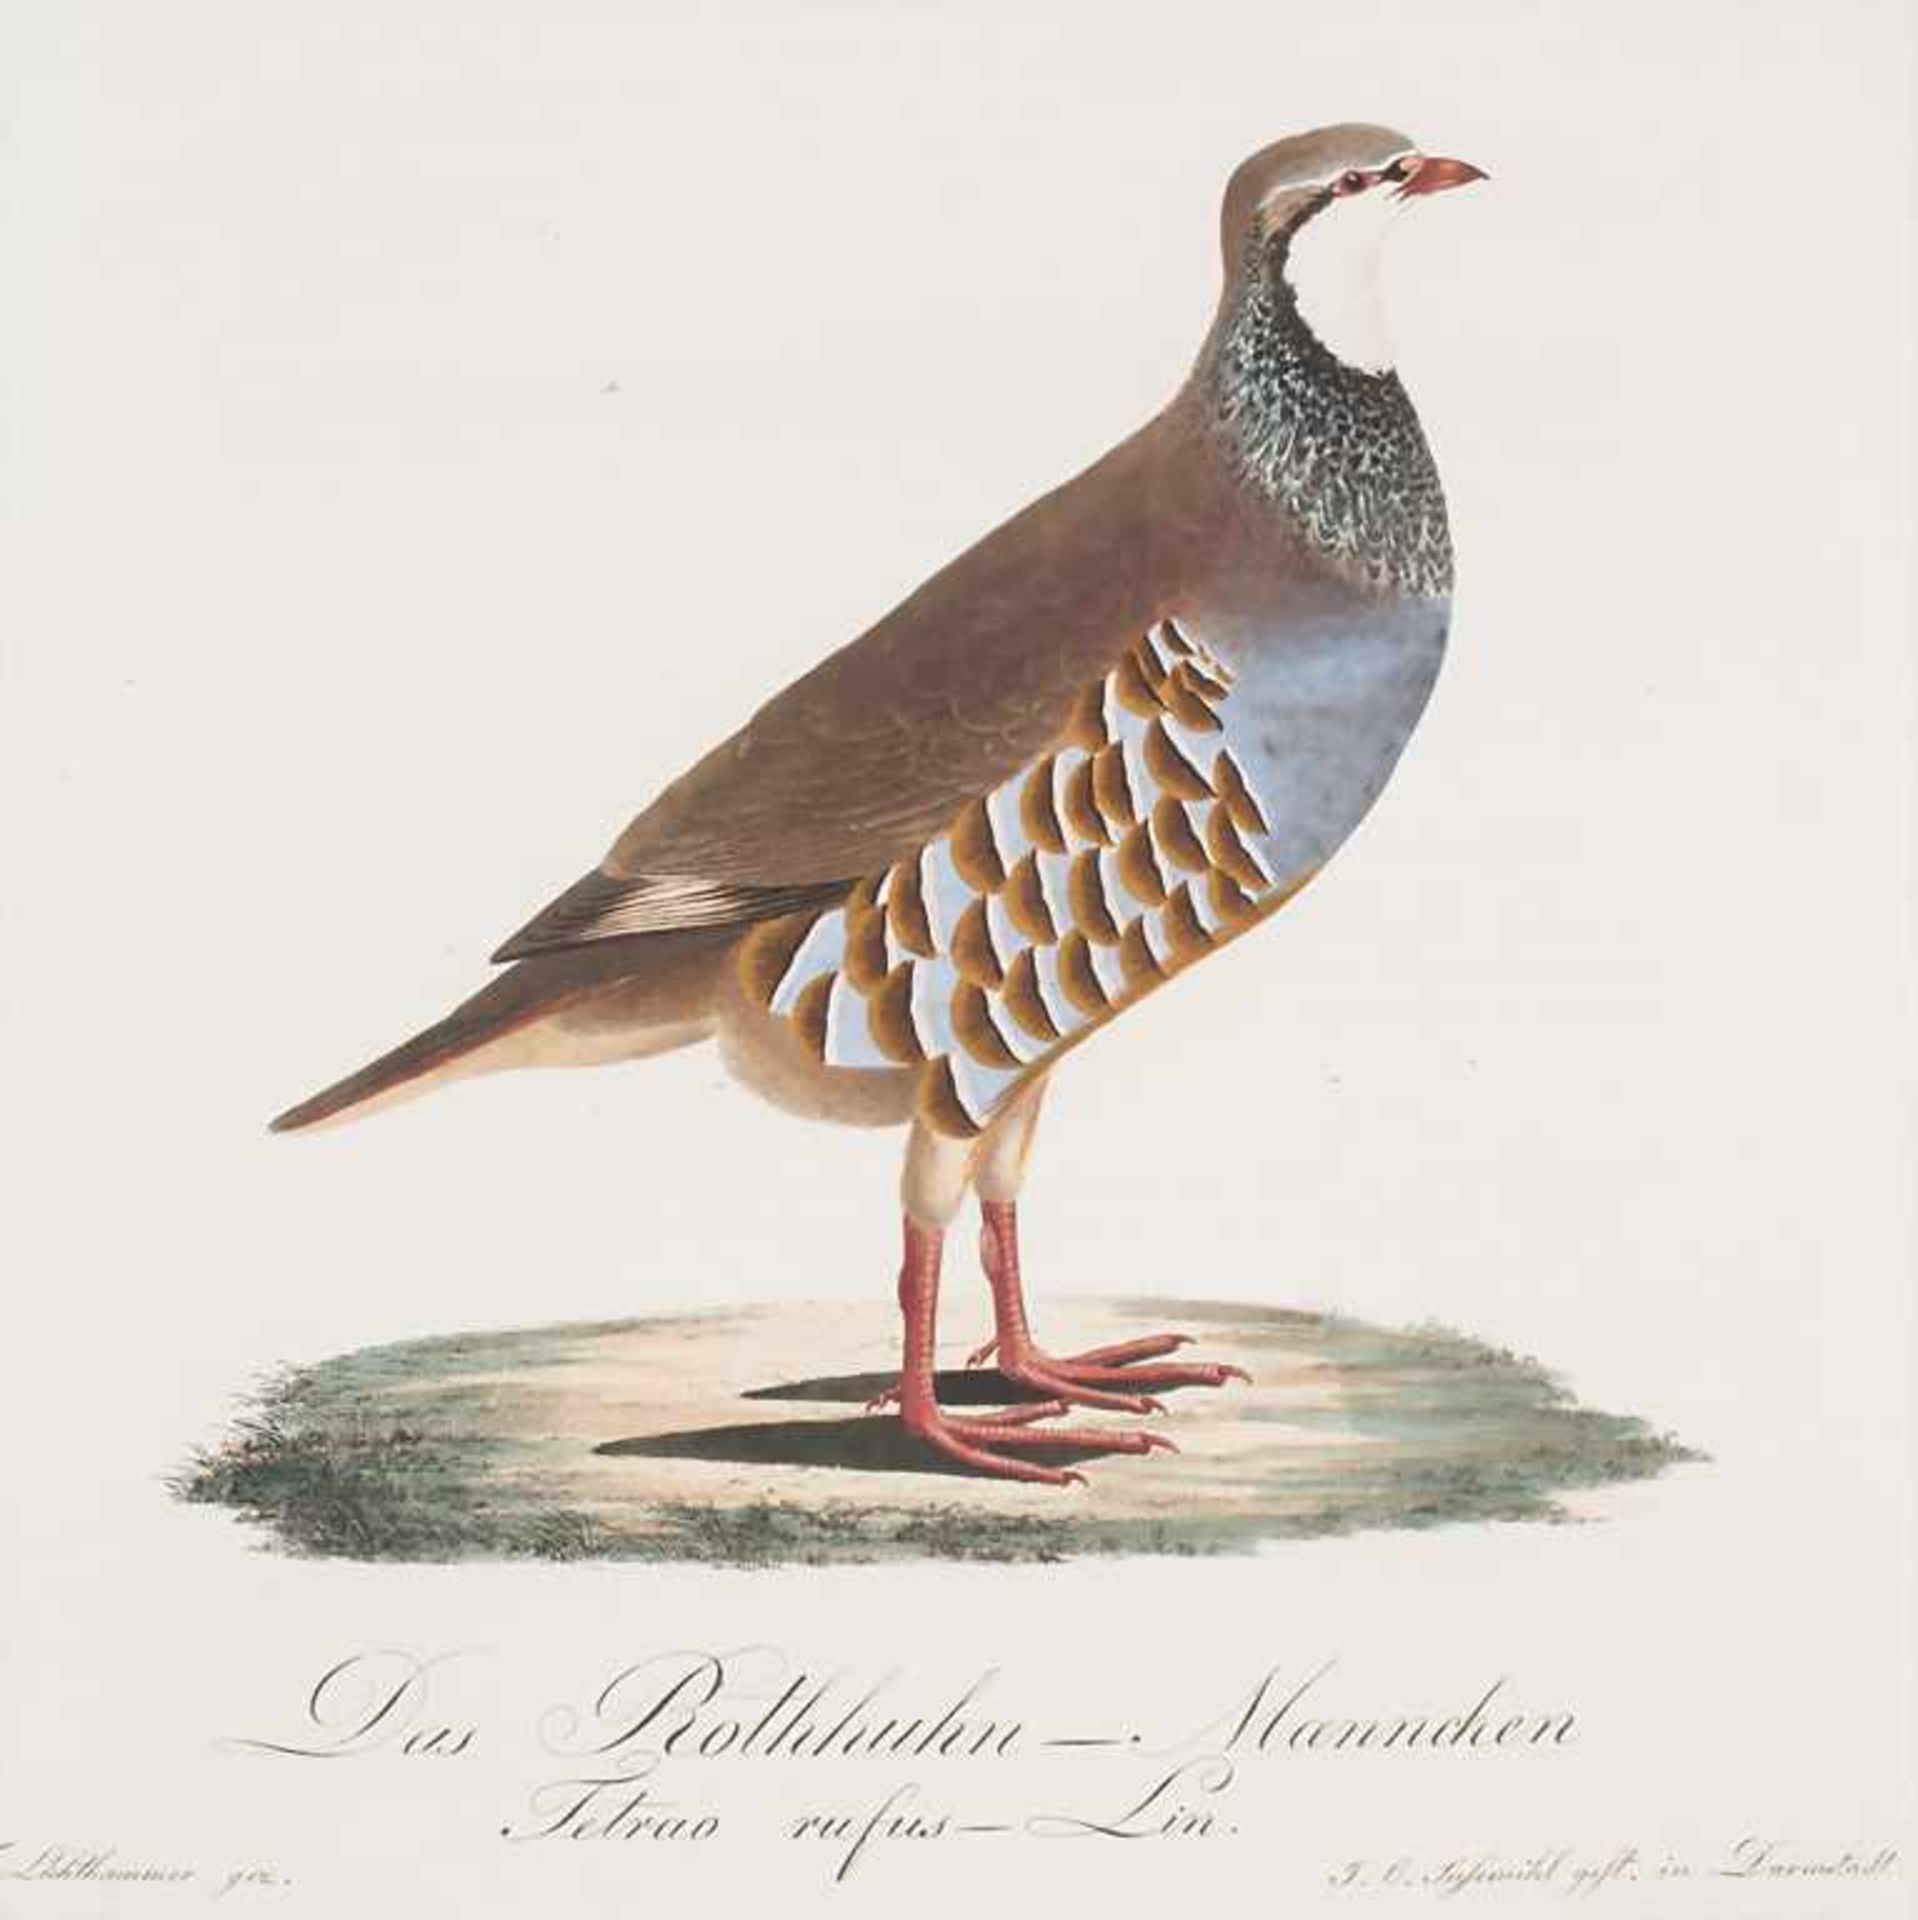 J.C. Susemihl (1767-nach 1848), 'Teutsche Ornithologie oder Naturgeschichte aller VögelTechnik: 20 - Image 8 of 17